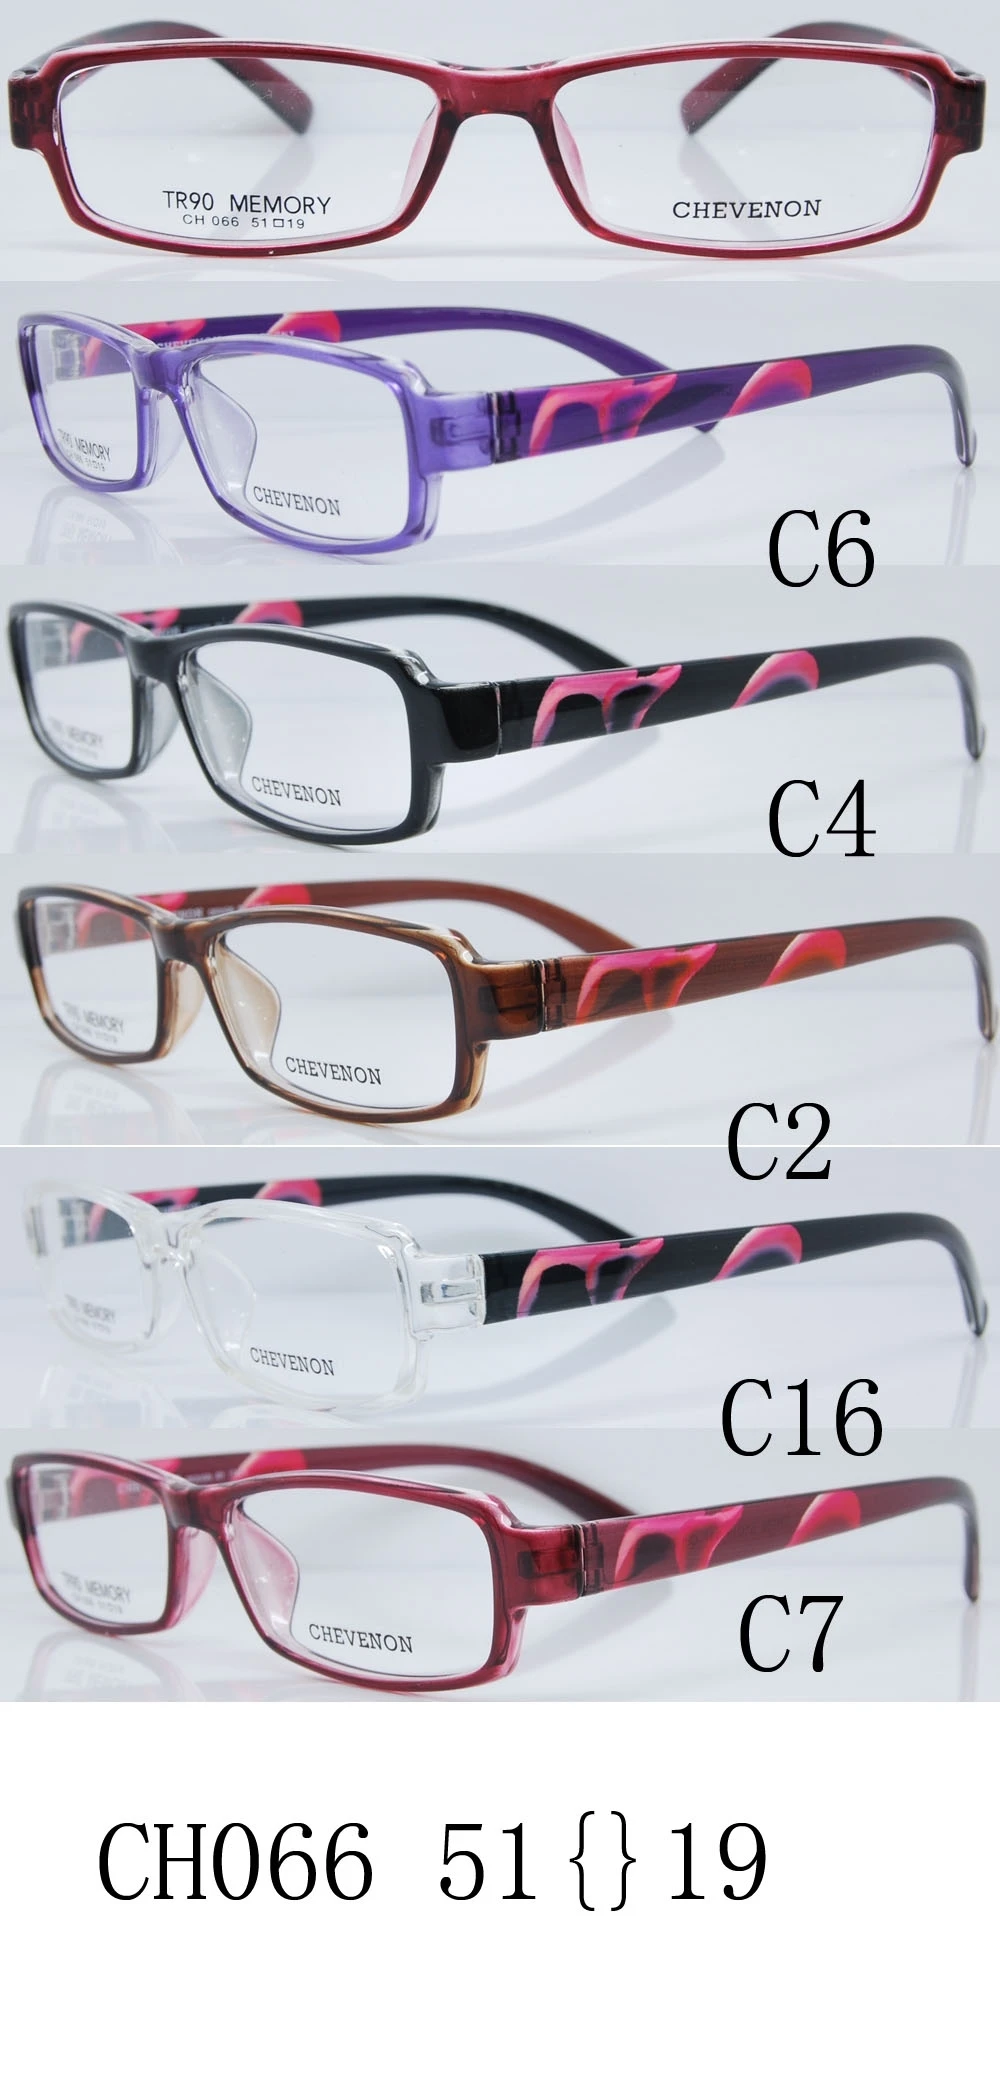 眼鏡,光學鏡架批發零售